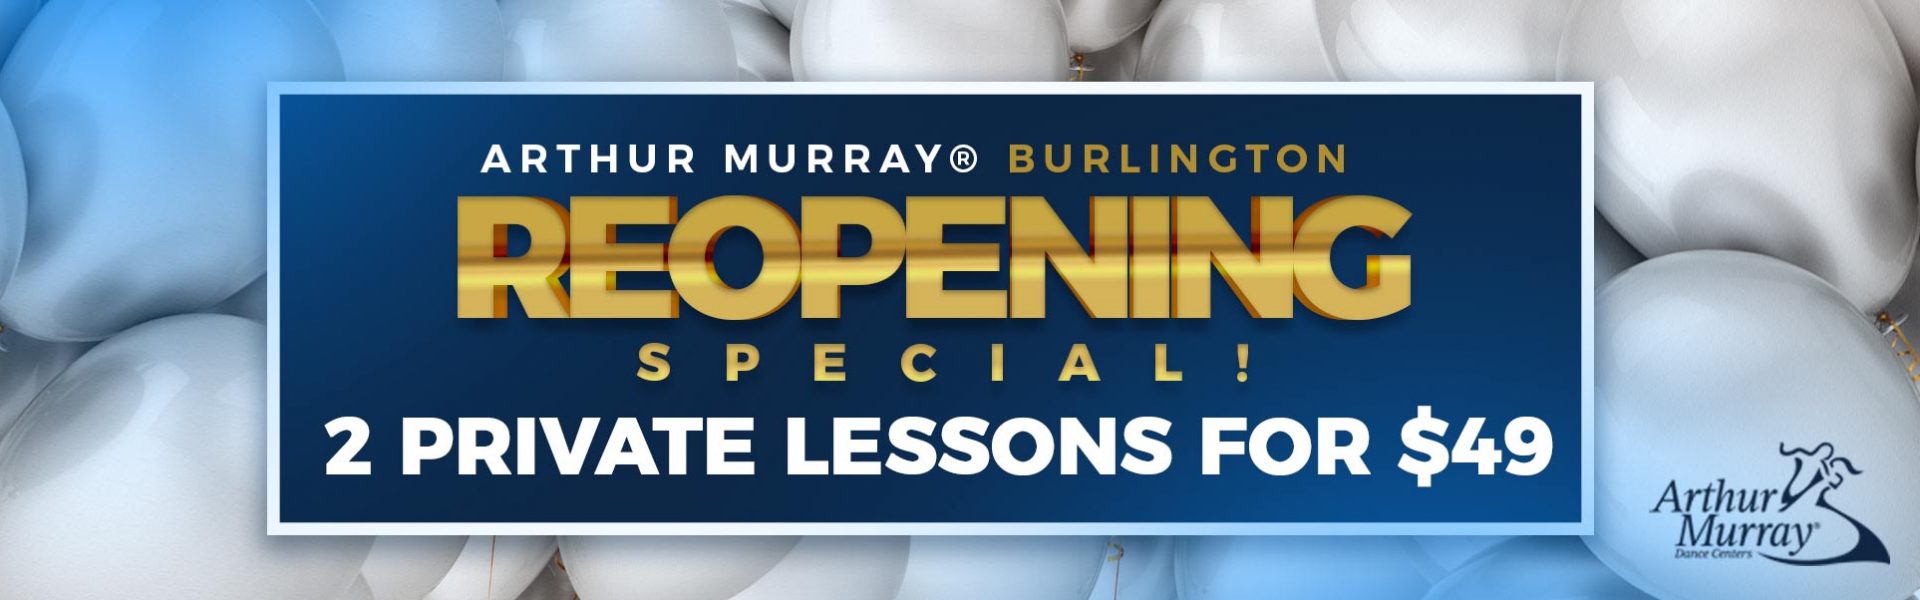 Arthur Murray Burlington Reopening Special